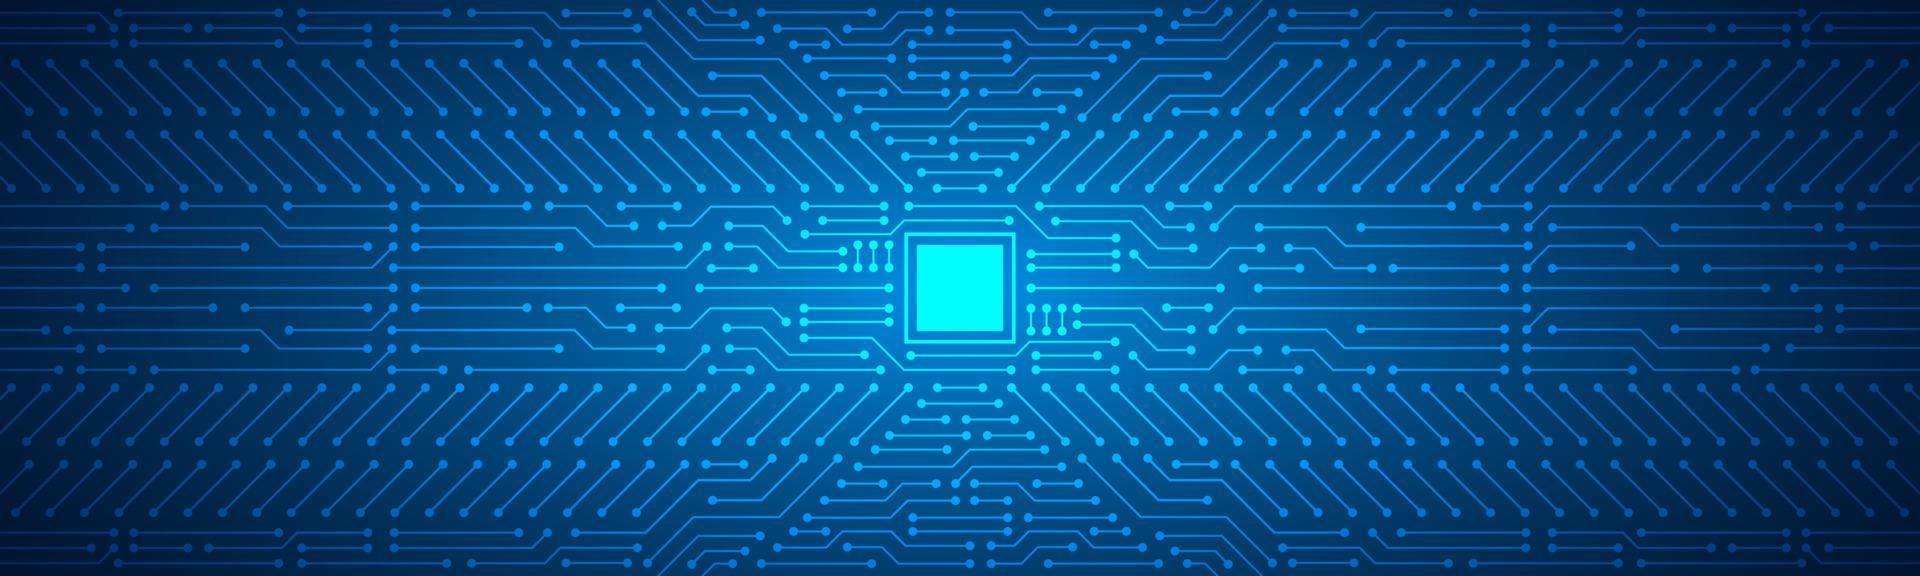 Mikrochiptechnologiehintergrund, blaues digitales Leiterplattenmuster vektor